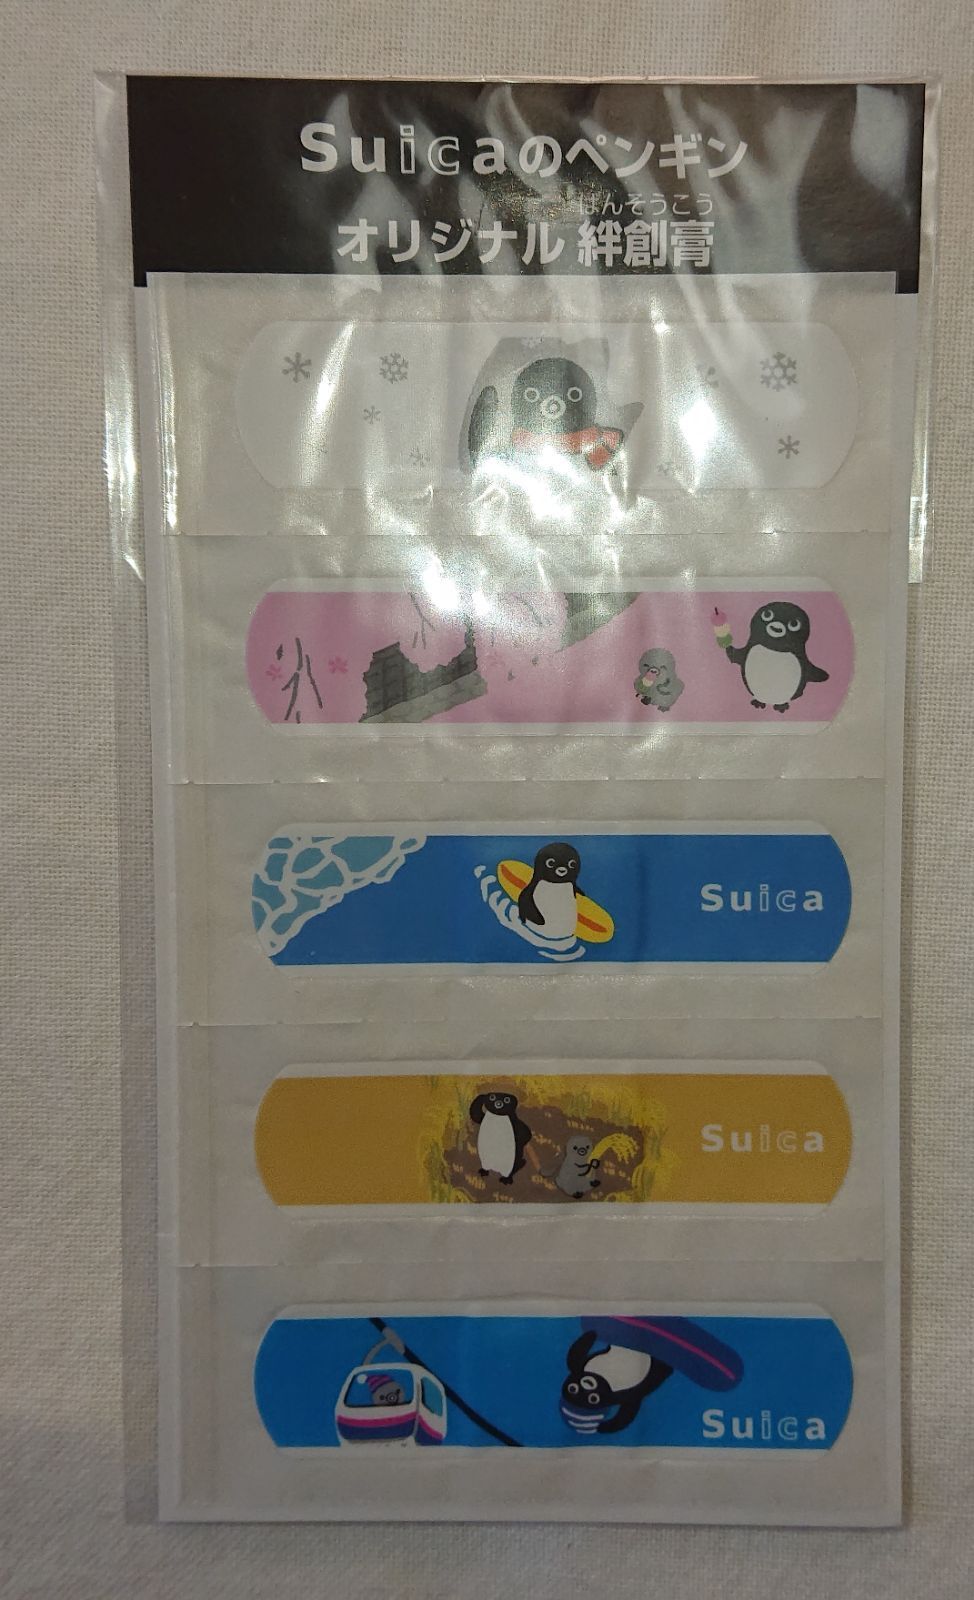 Suicaペンギン グッズ6点セット 非売品 ボールペン他 JR東日本 関連